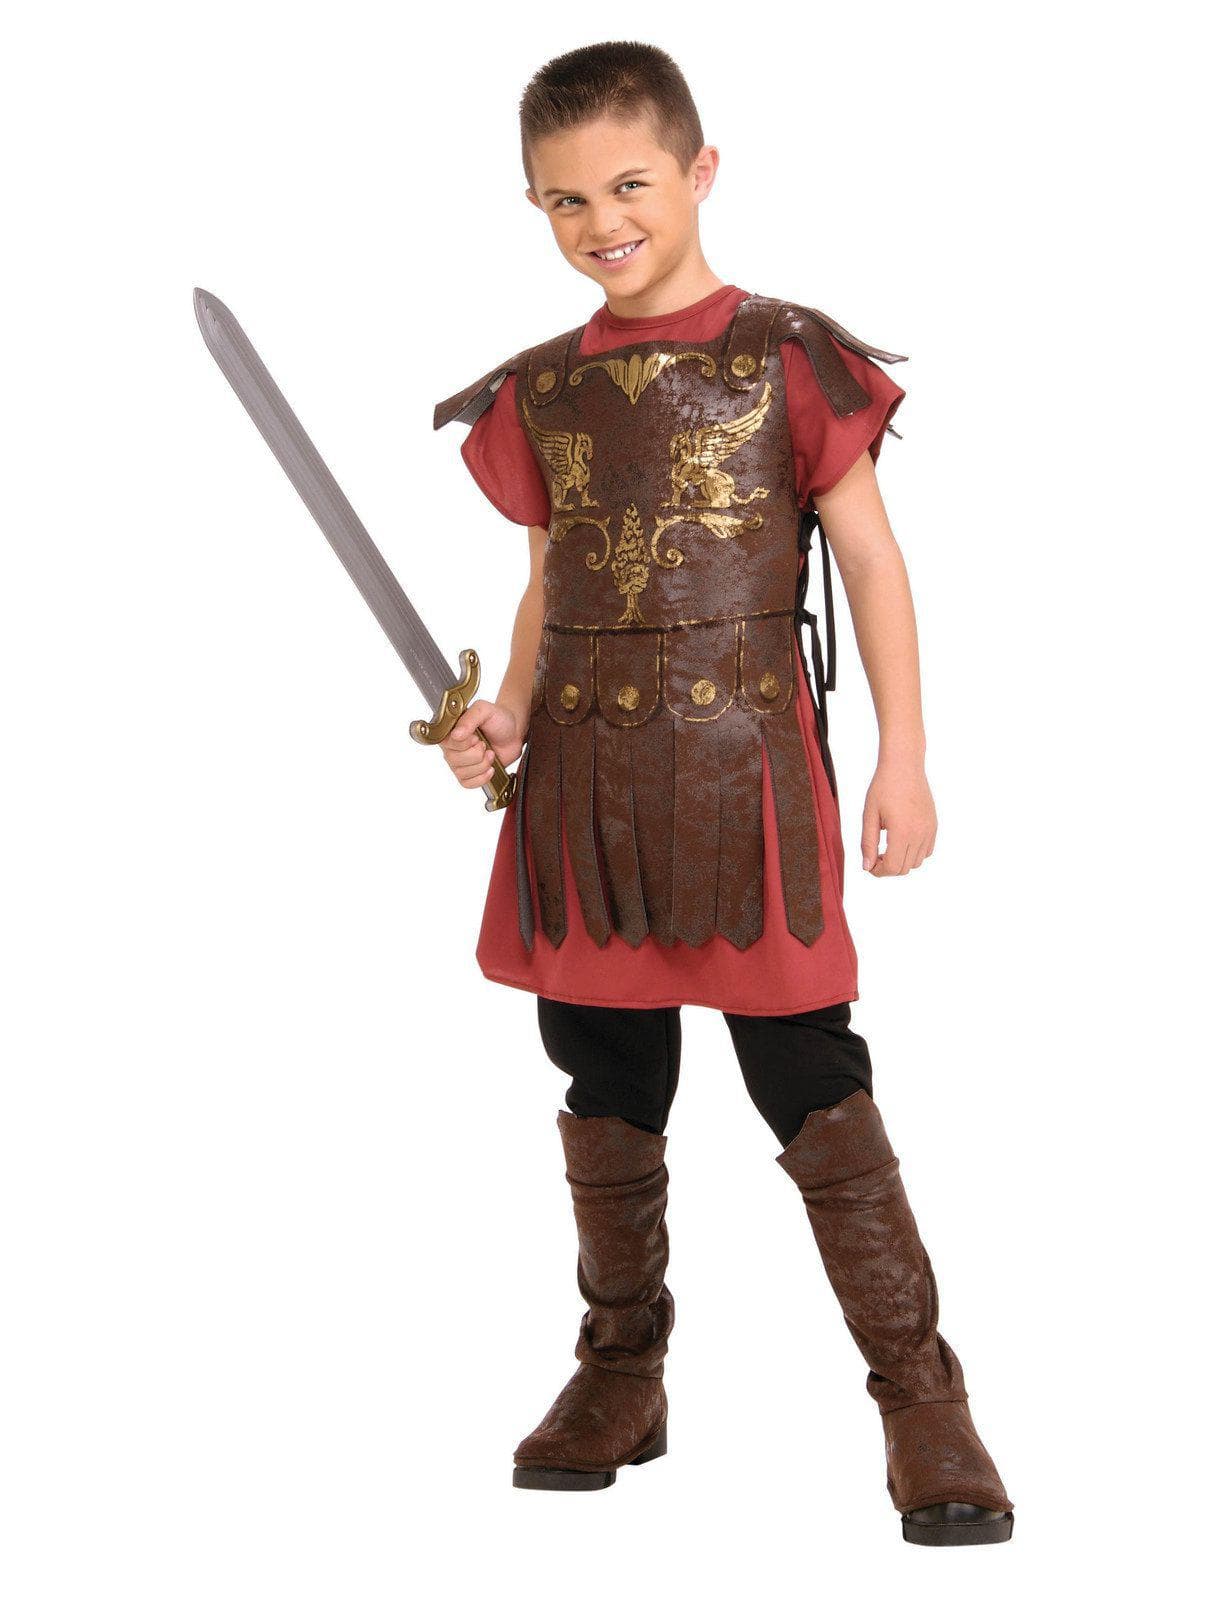 Kids Gladiator Costume - costumes.com